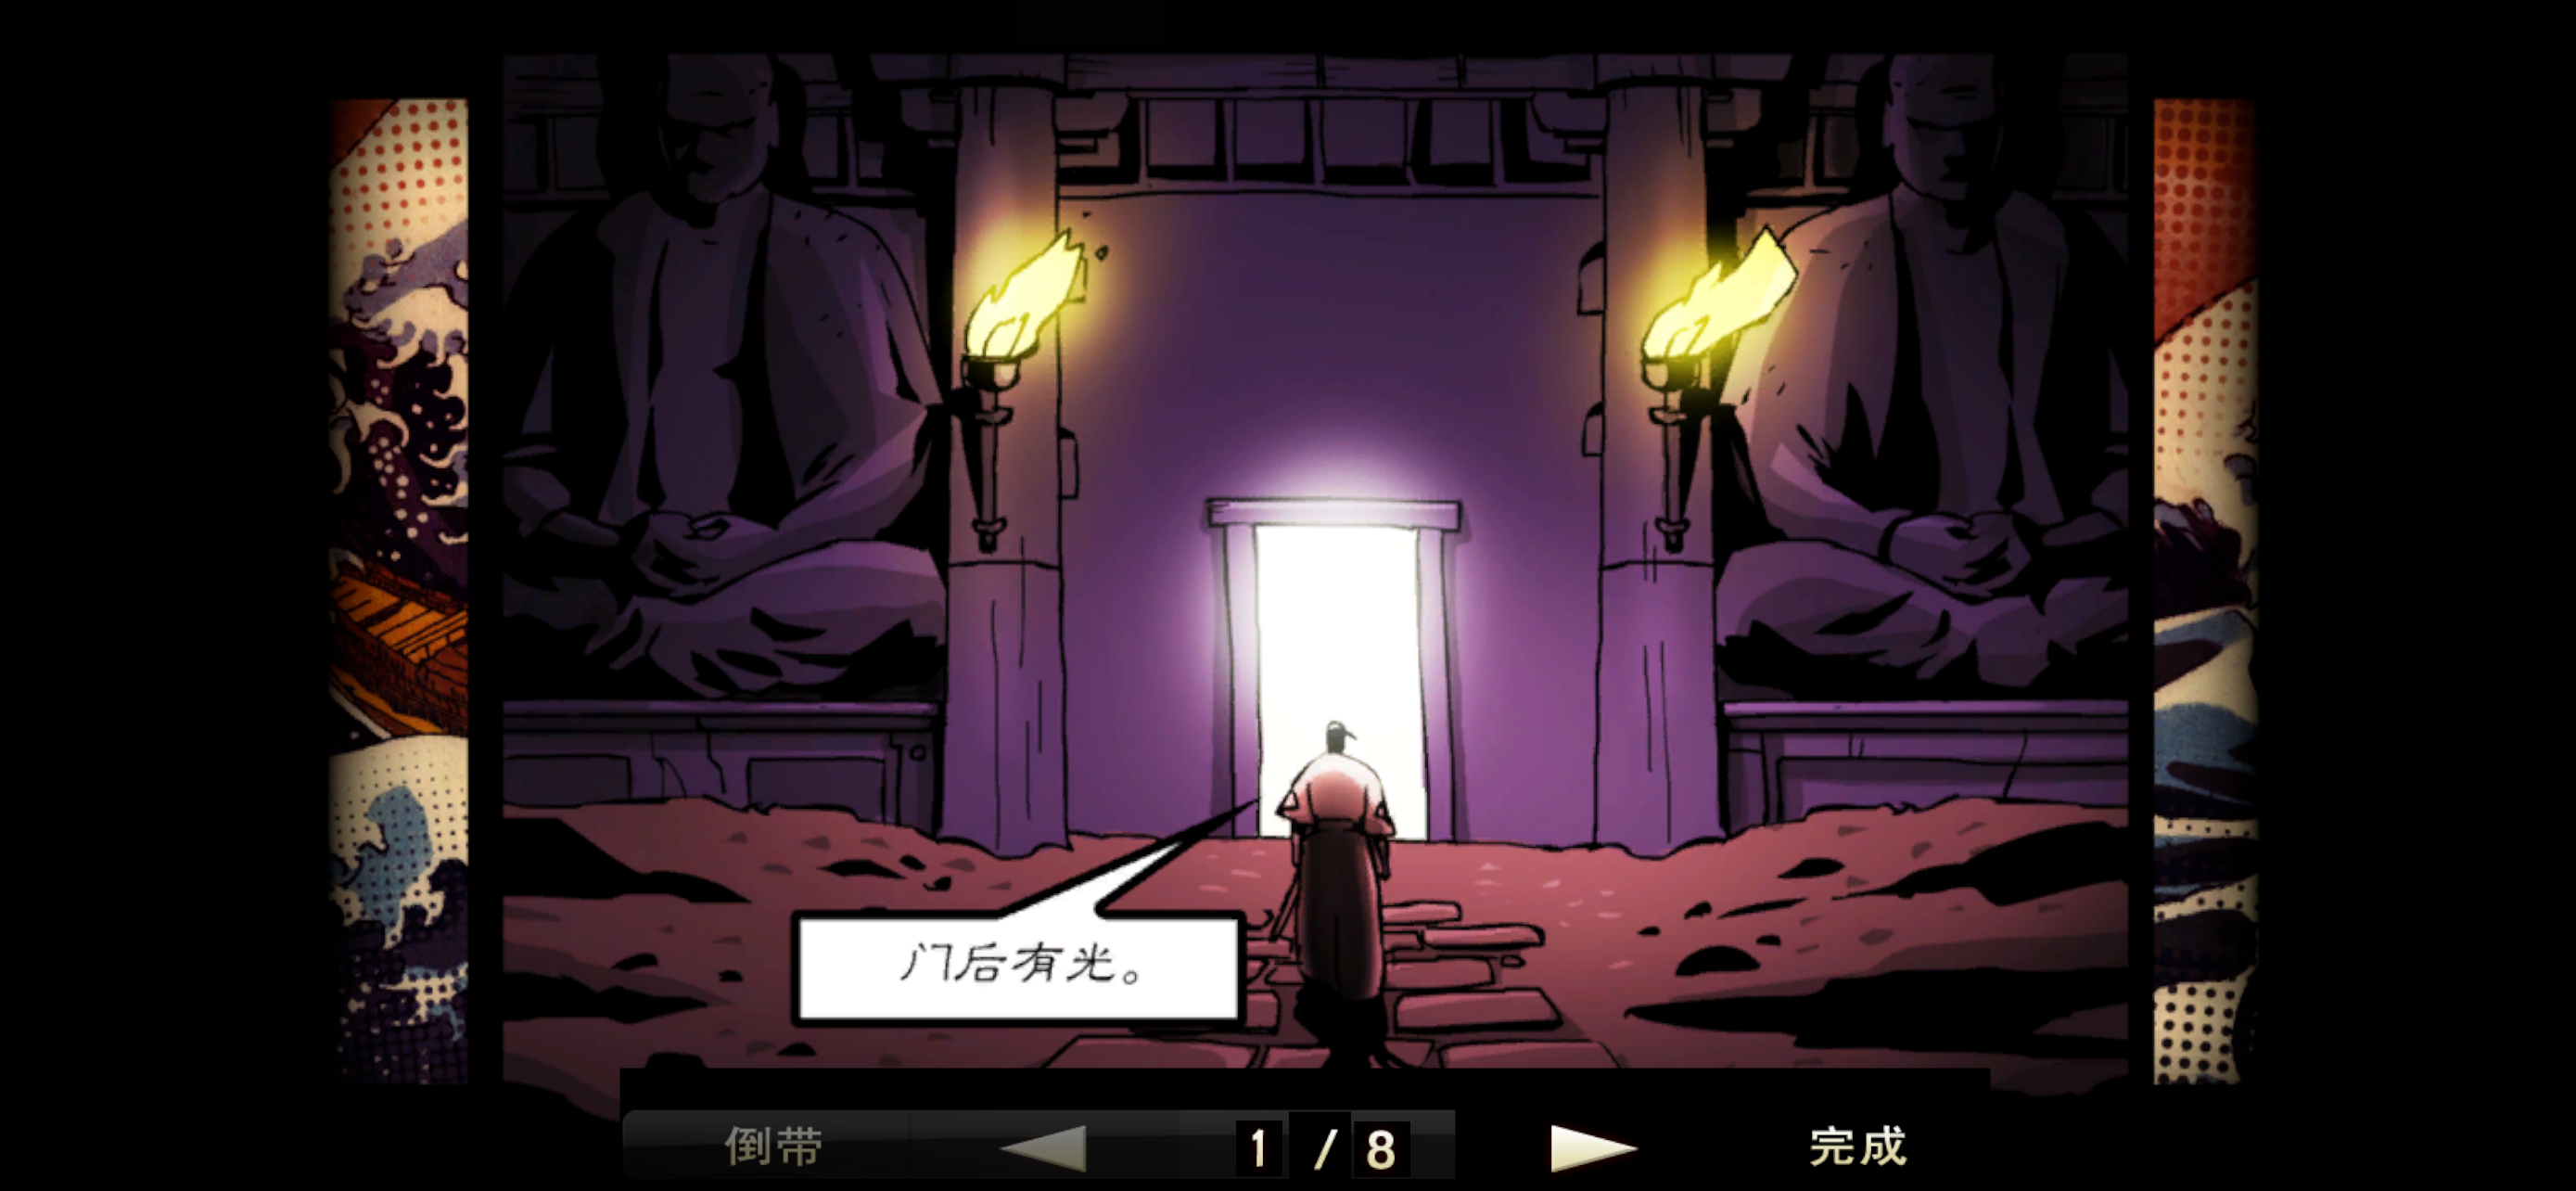 Screenshot 1 of viaje ninja 0.1